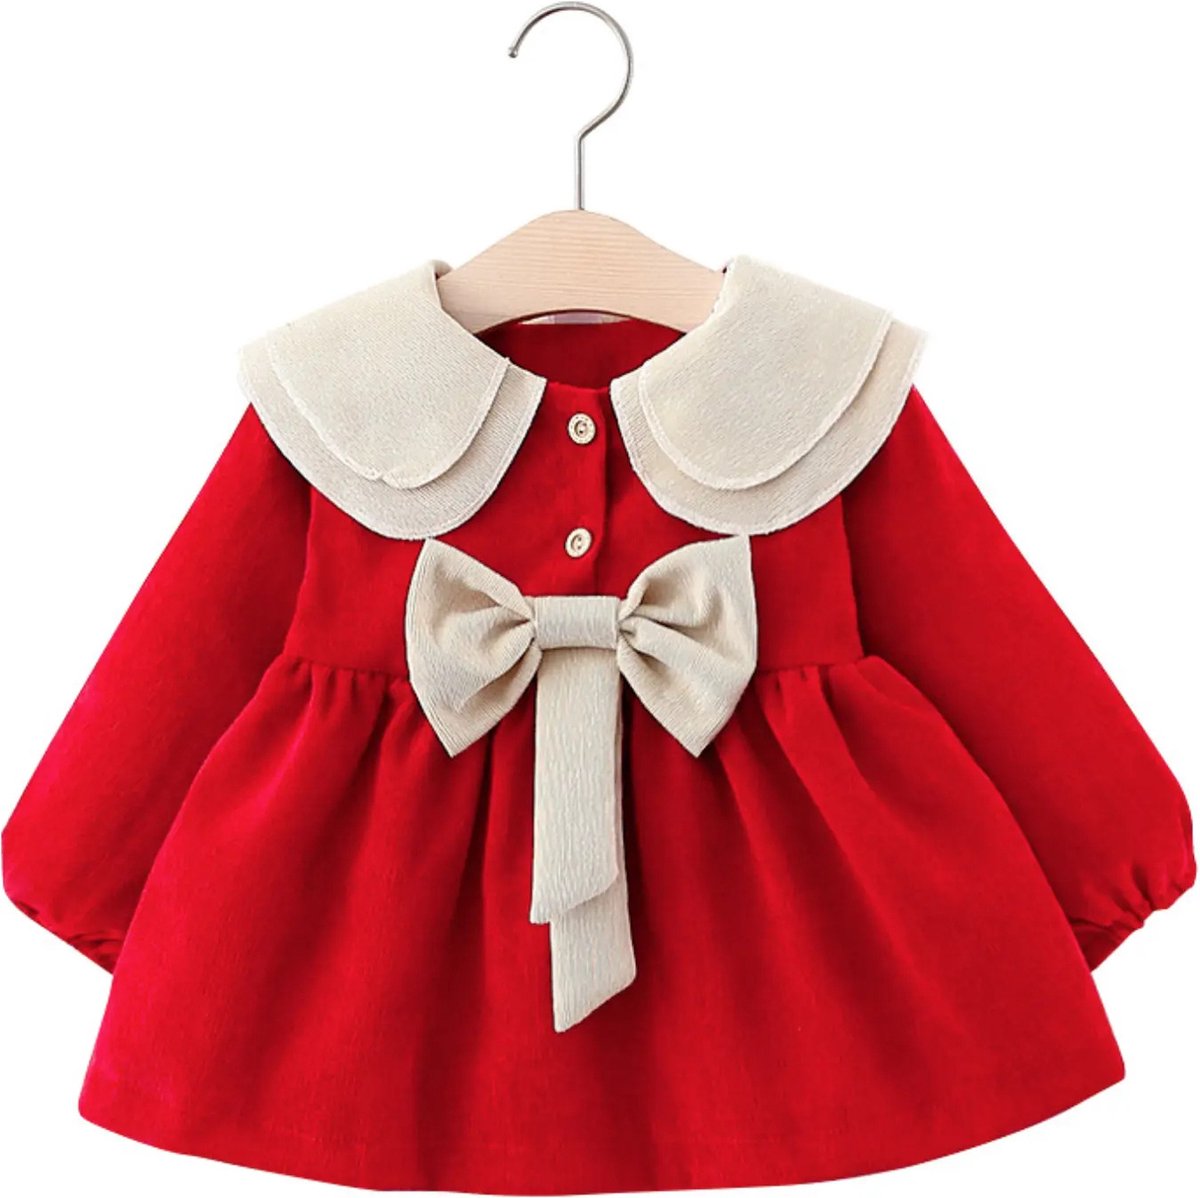 Baby Garden meisjes jurkje rood met strik maat 92